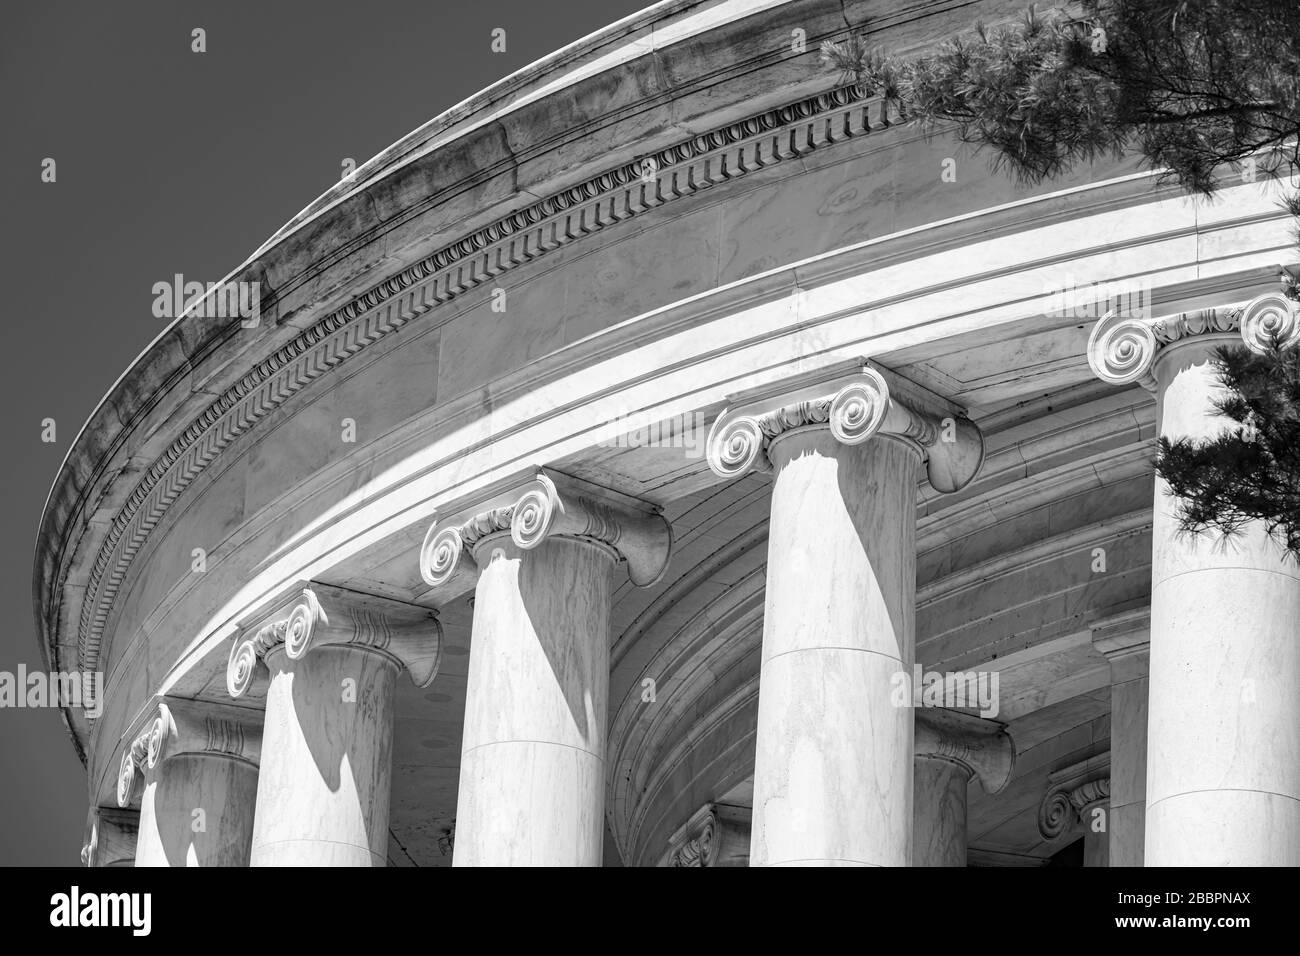 Les colonnes de l'ordre ionique, avec des capitales scinlées, supportent le dôme peu profond du Jefferson Memorial à Washington DC. Banque D'Images